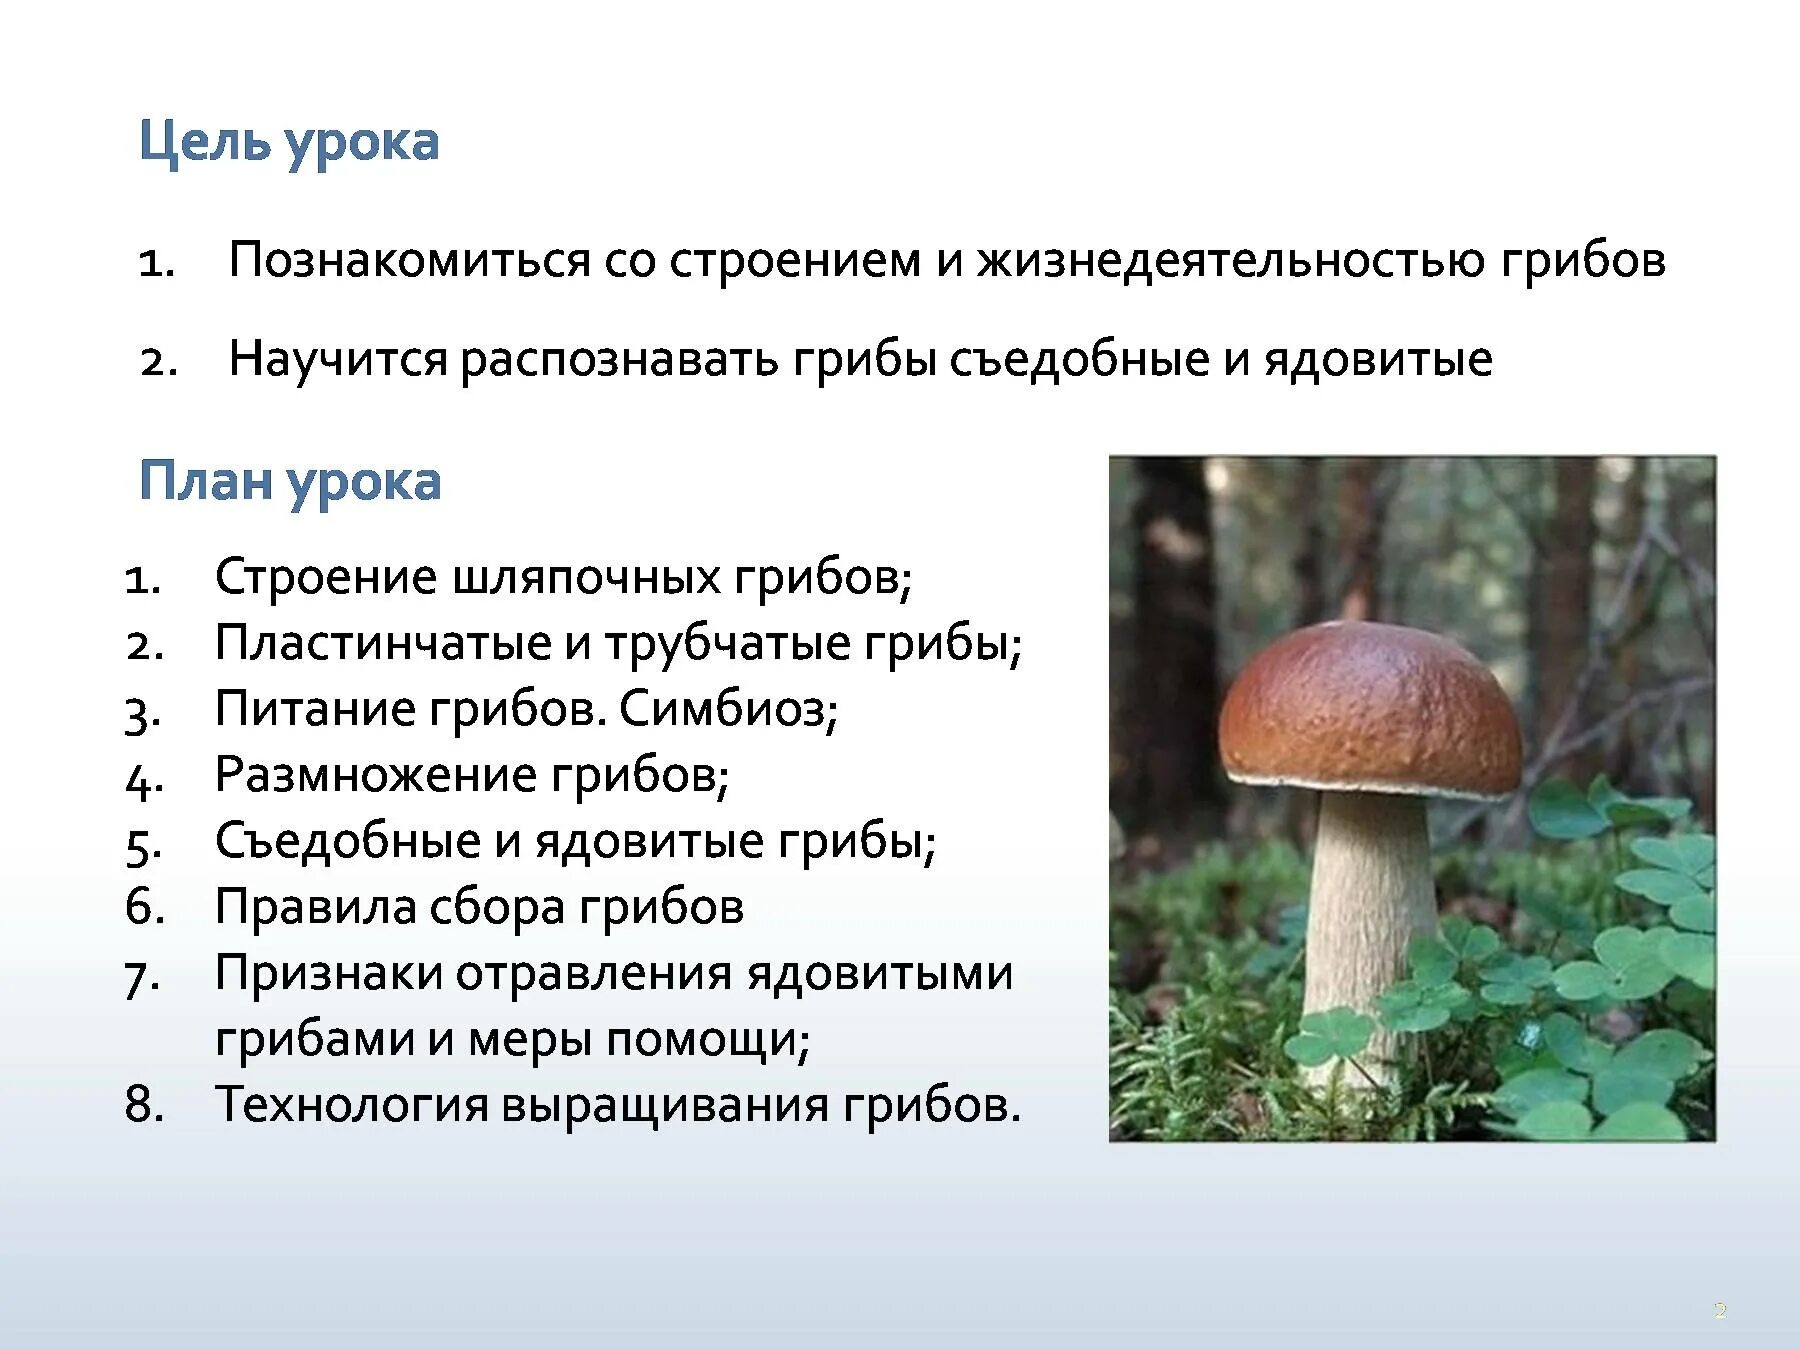 Ядовитые шляпочные грибы. Грибы строение шляпочных грибов. Строение шляпочного гриба 5 класс биология. Шляпочные грибы 7 класс. Лабораторная по биологии 6 класс строение шляпочных грибов.